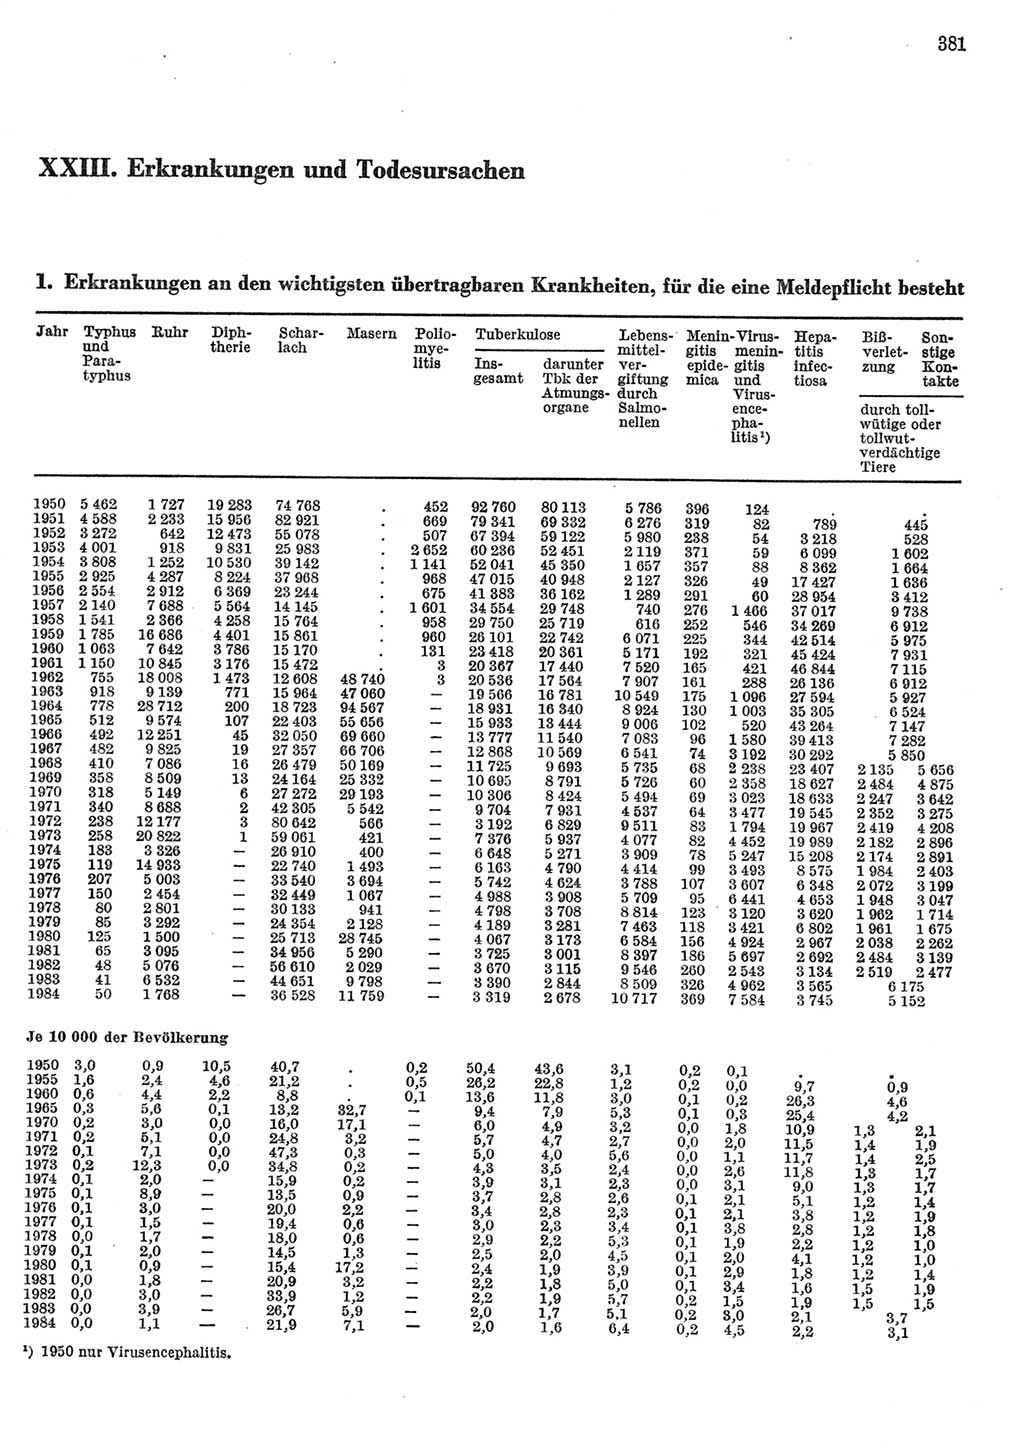 Statistisches Jahrbuch der Deutschen Demokratischen Republik (DDR) 1985, Seite 381 (Stat. Jb. DDR 1985, S. 381)